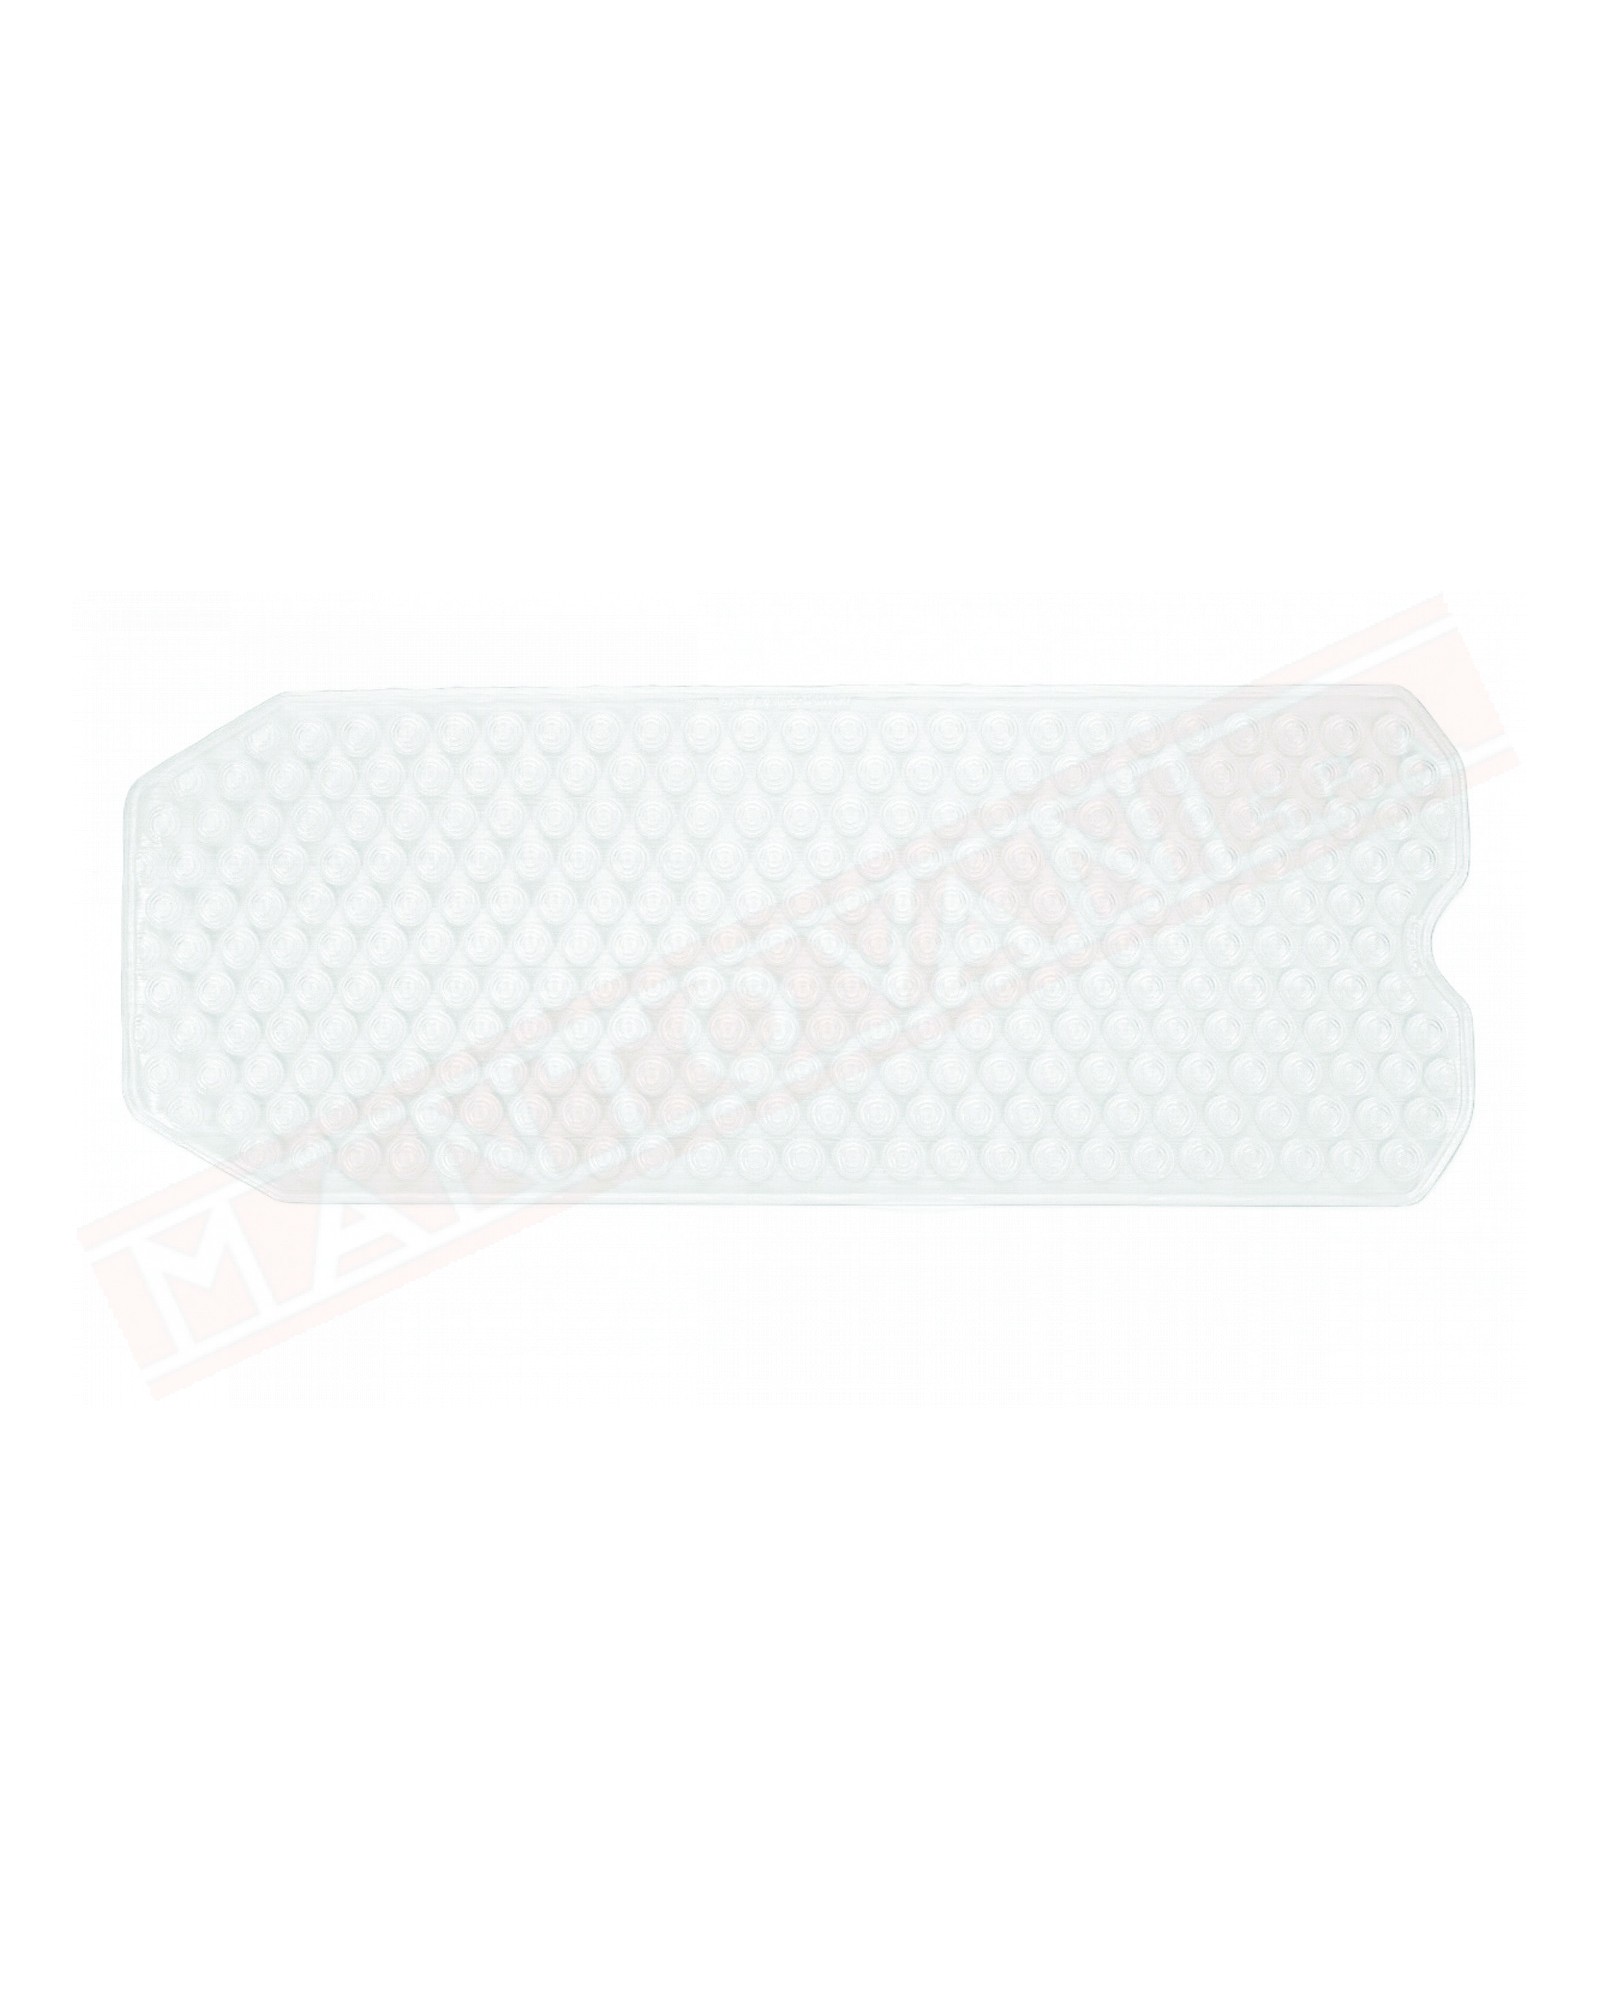 Gedy tappeto antiscivolo per vasca in pvc plastificato trasparente misure art 104x40x0,6